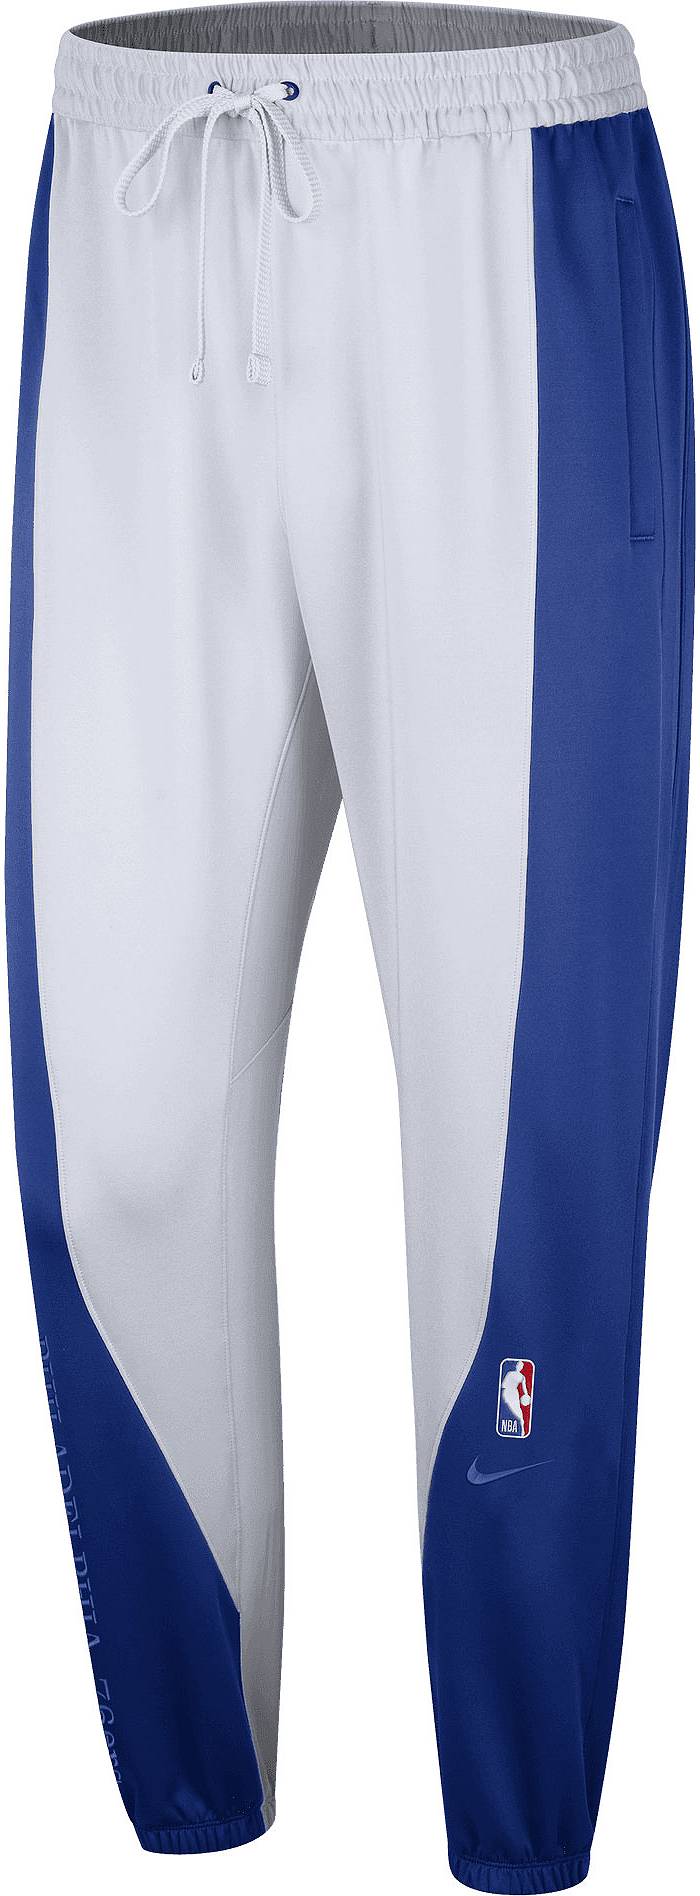 Nike Men's Philadelphia 76ers Blue Showtime Pants, Large